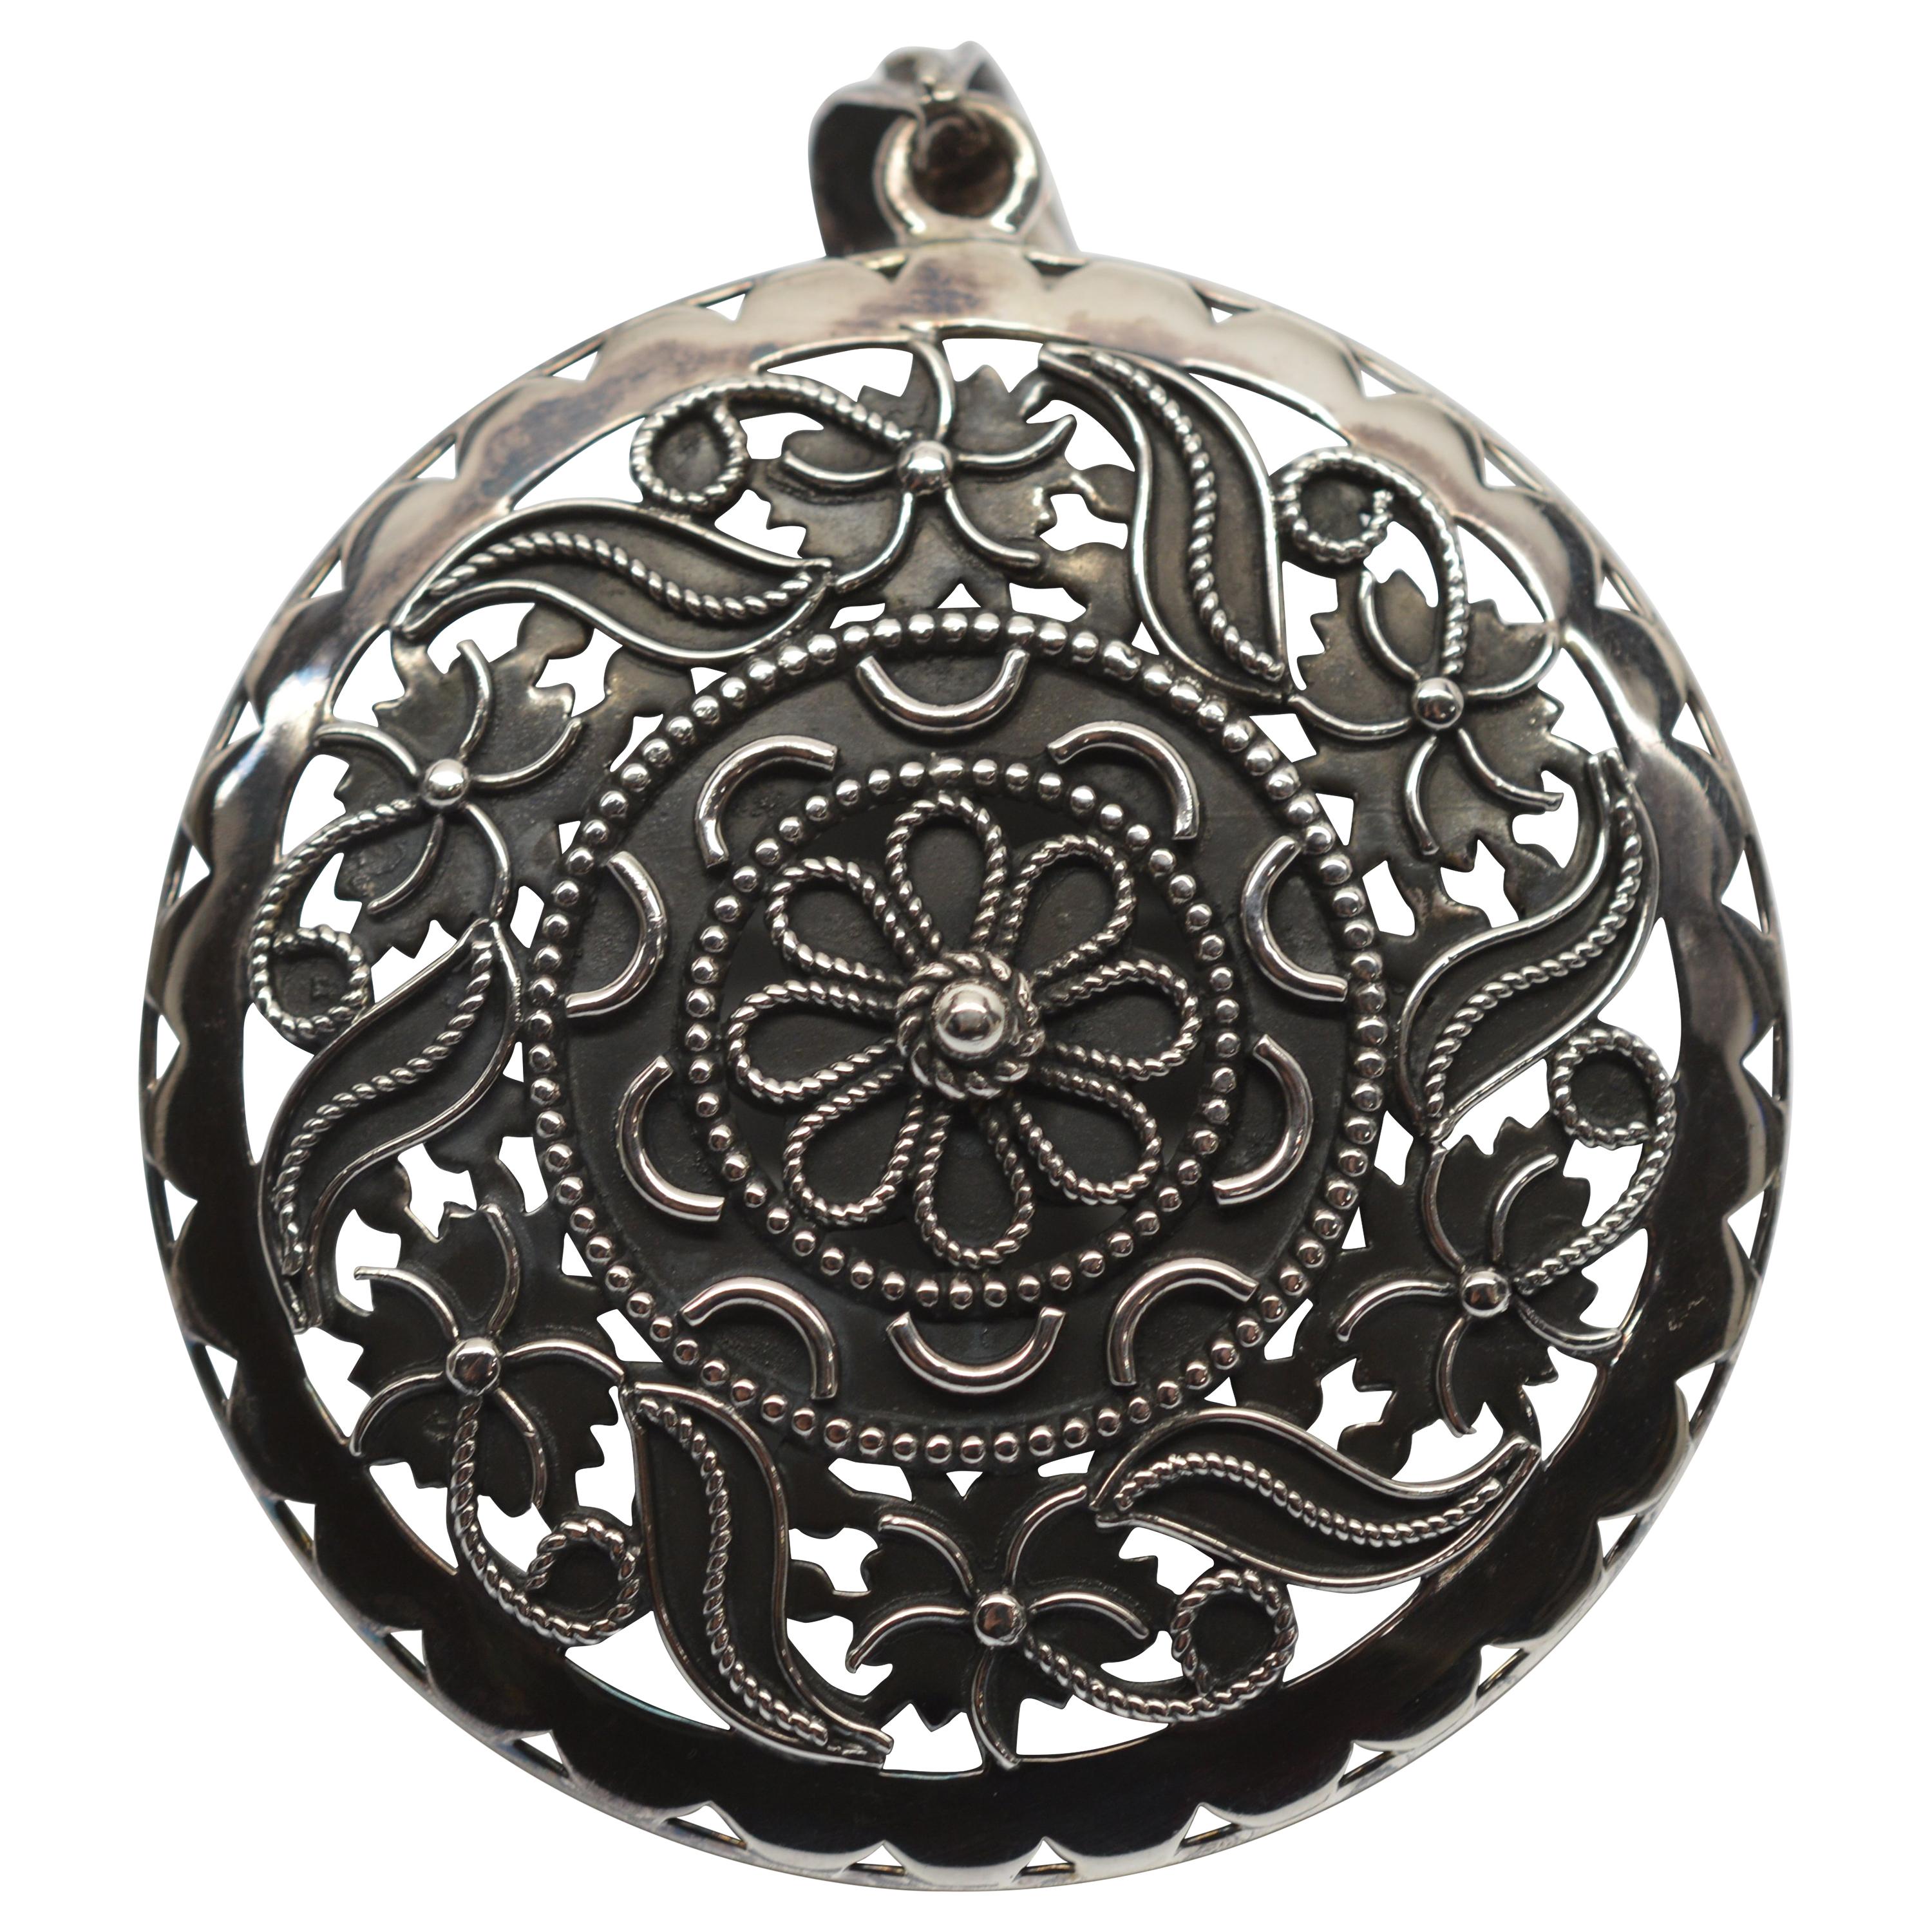 Ornate Sterling Silver Medallion Pendant